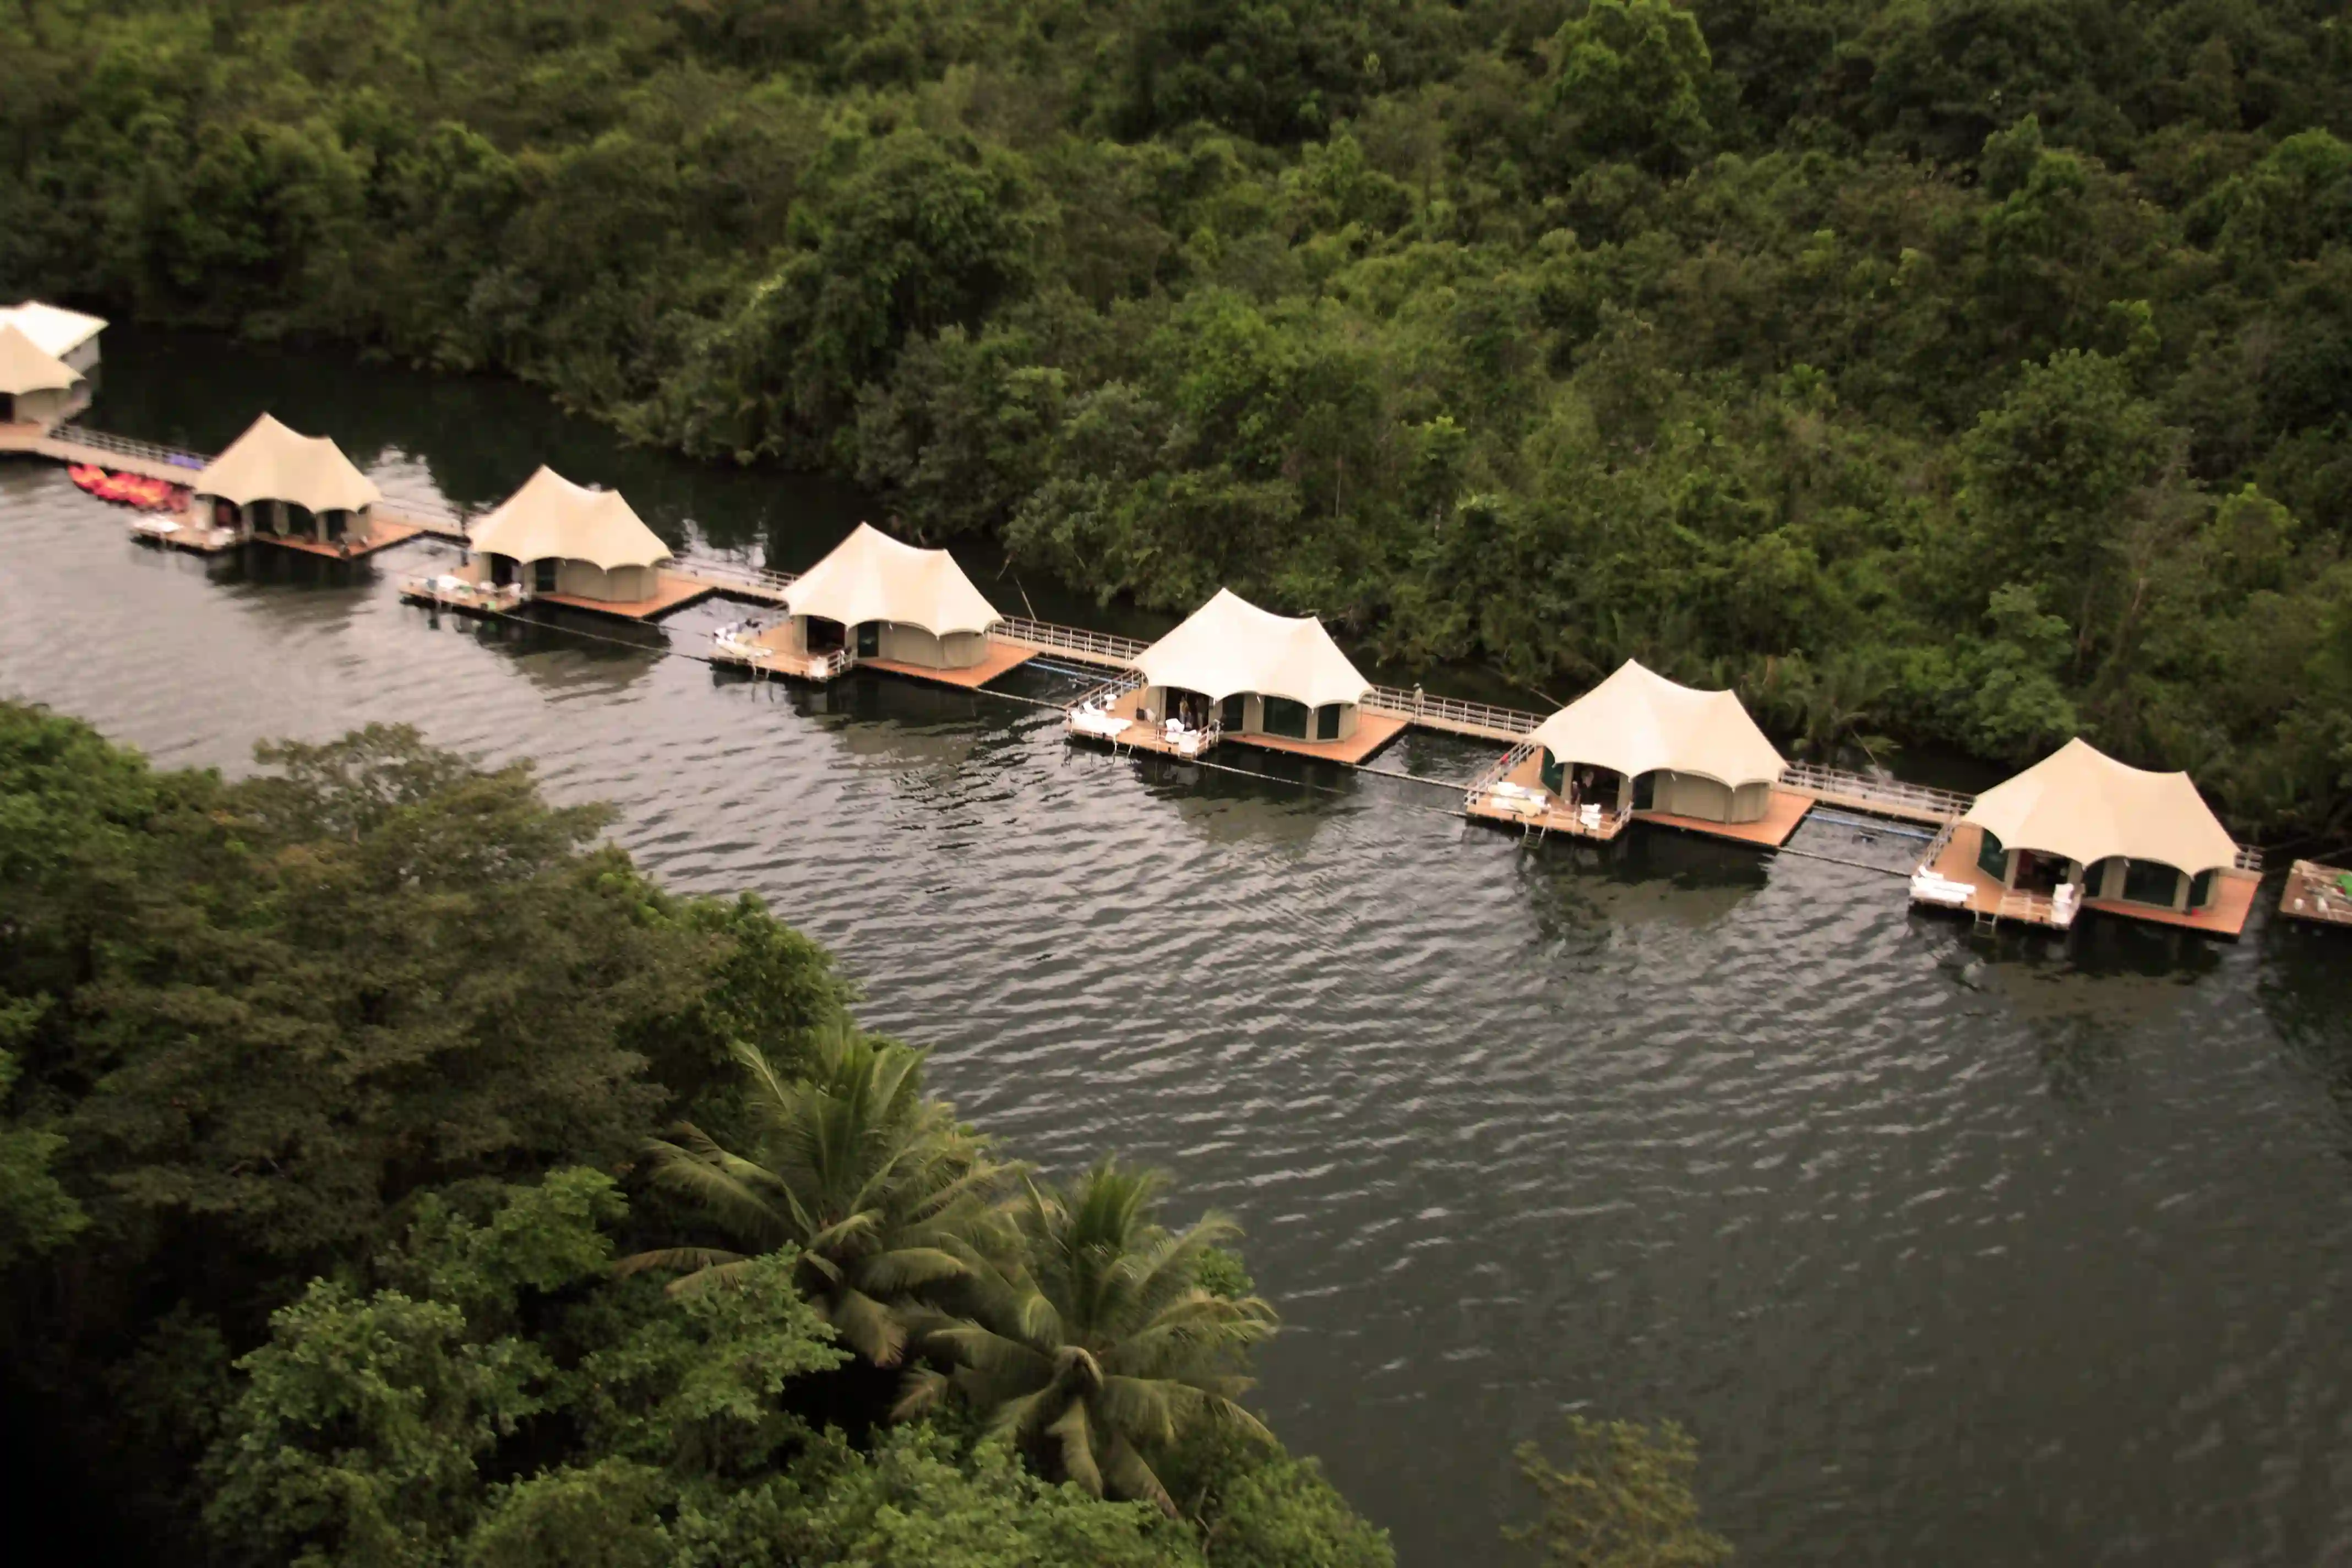 Teltene ligger på tømmerflåder på floden, 4 Rivers Floating Lodge, Cambodia